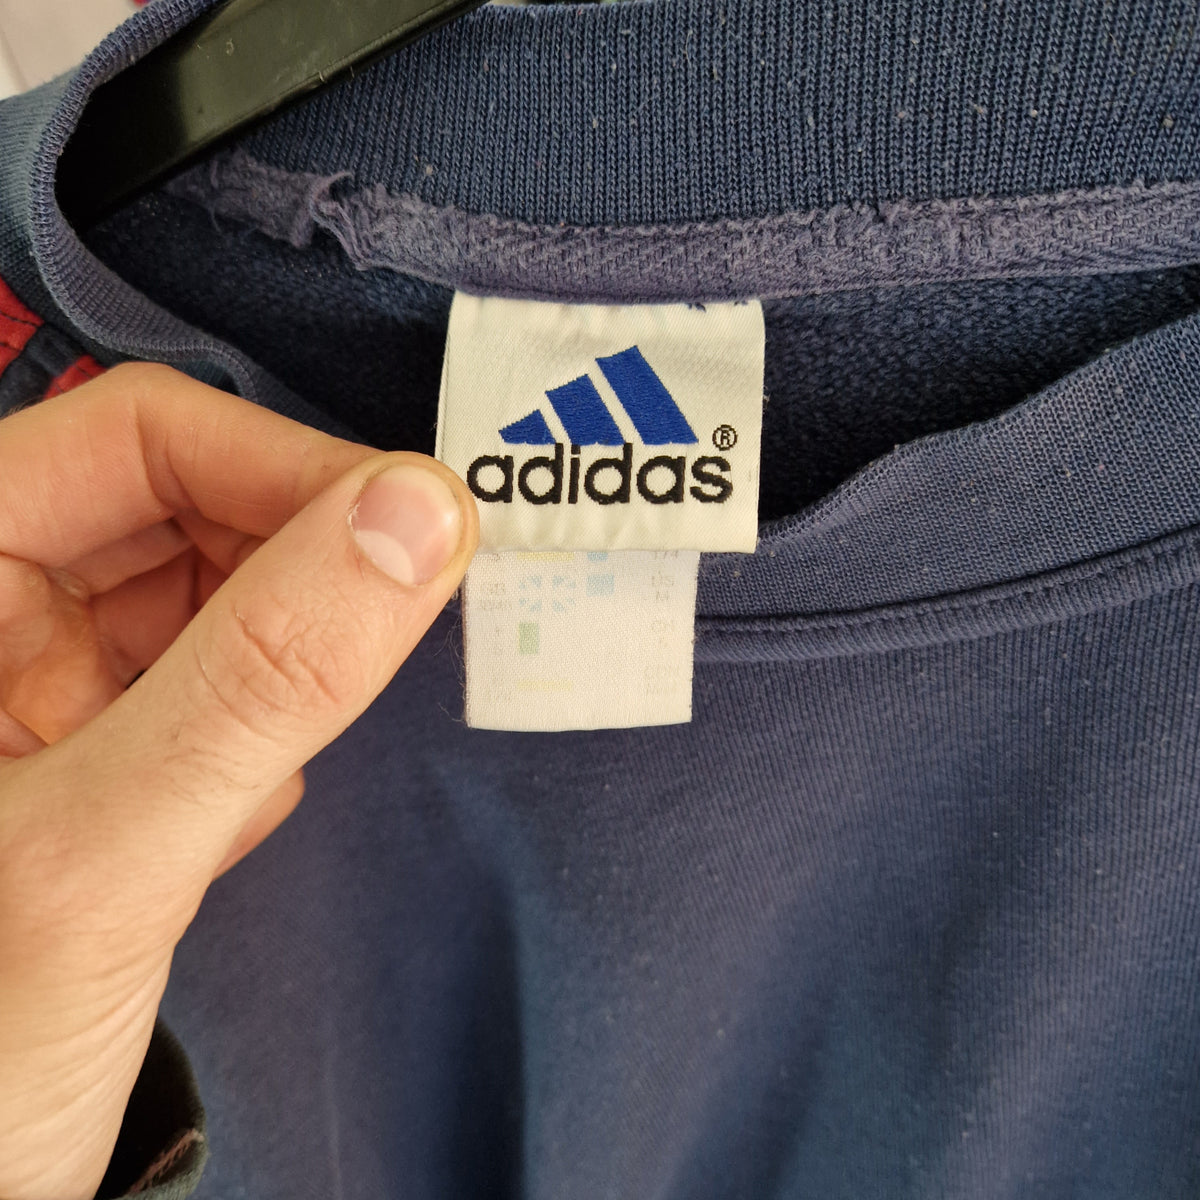 90's Adidas Small Logo Sweatshirt - Size Large